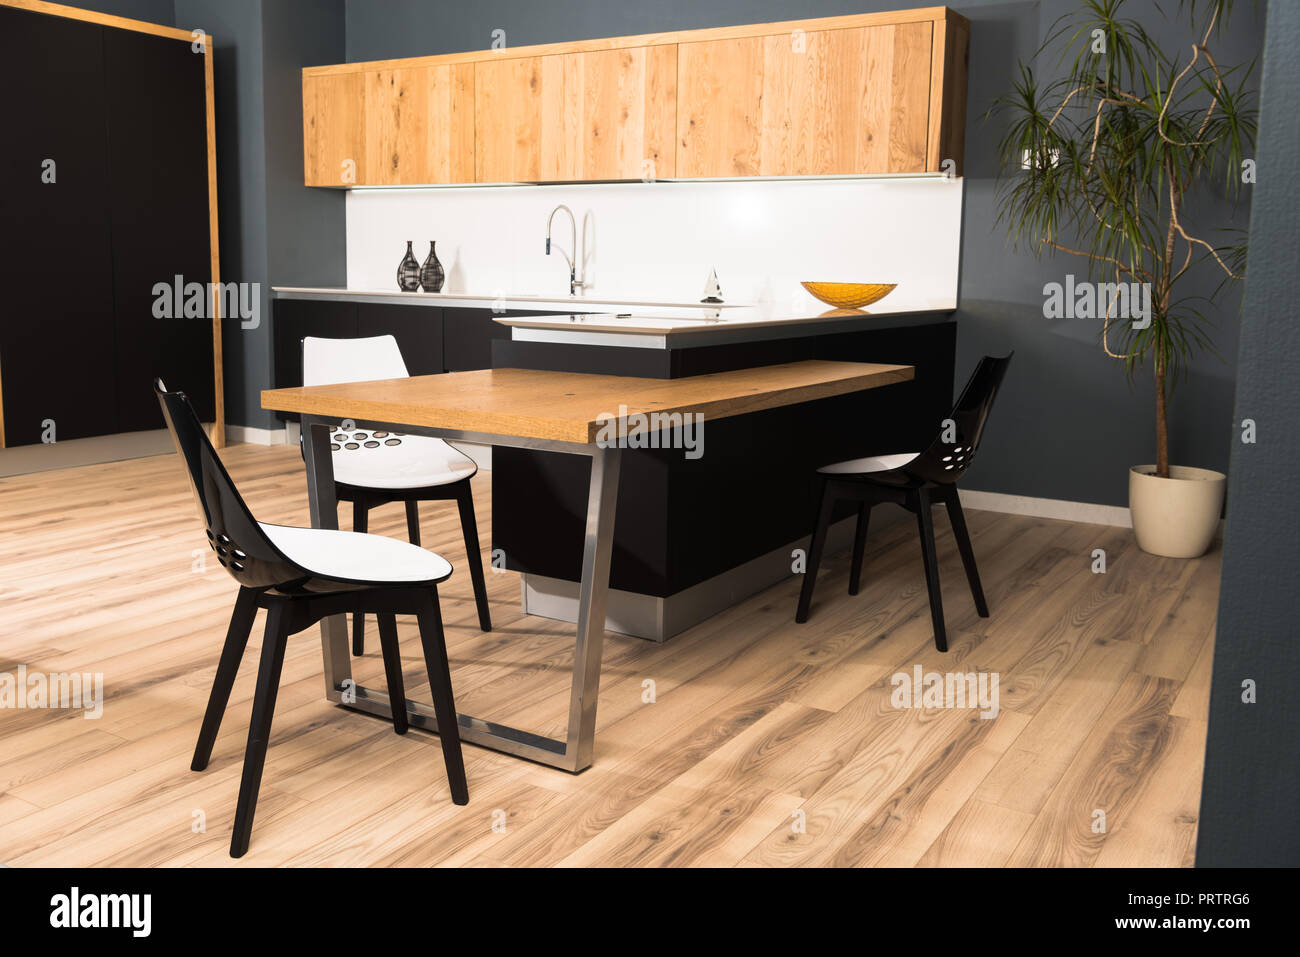 Innenraum der moderne saubere helle Küche mit komfortablen Möbeln und Topfpflanze Stockfoto